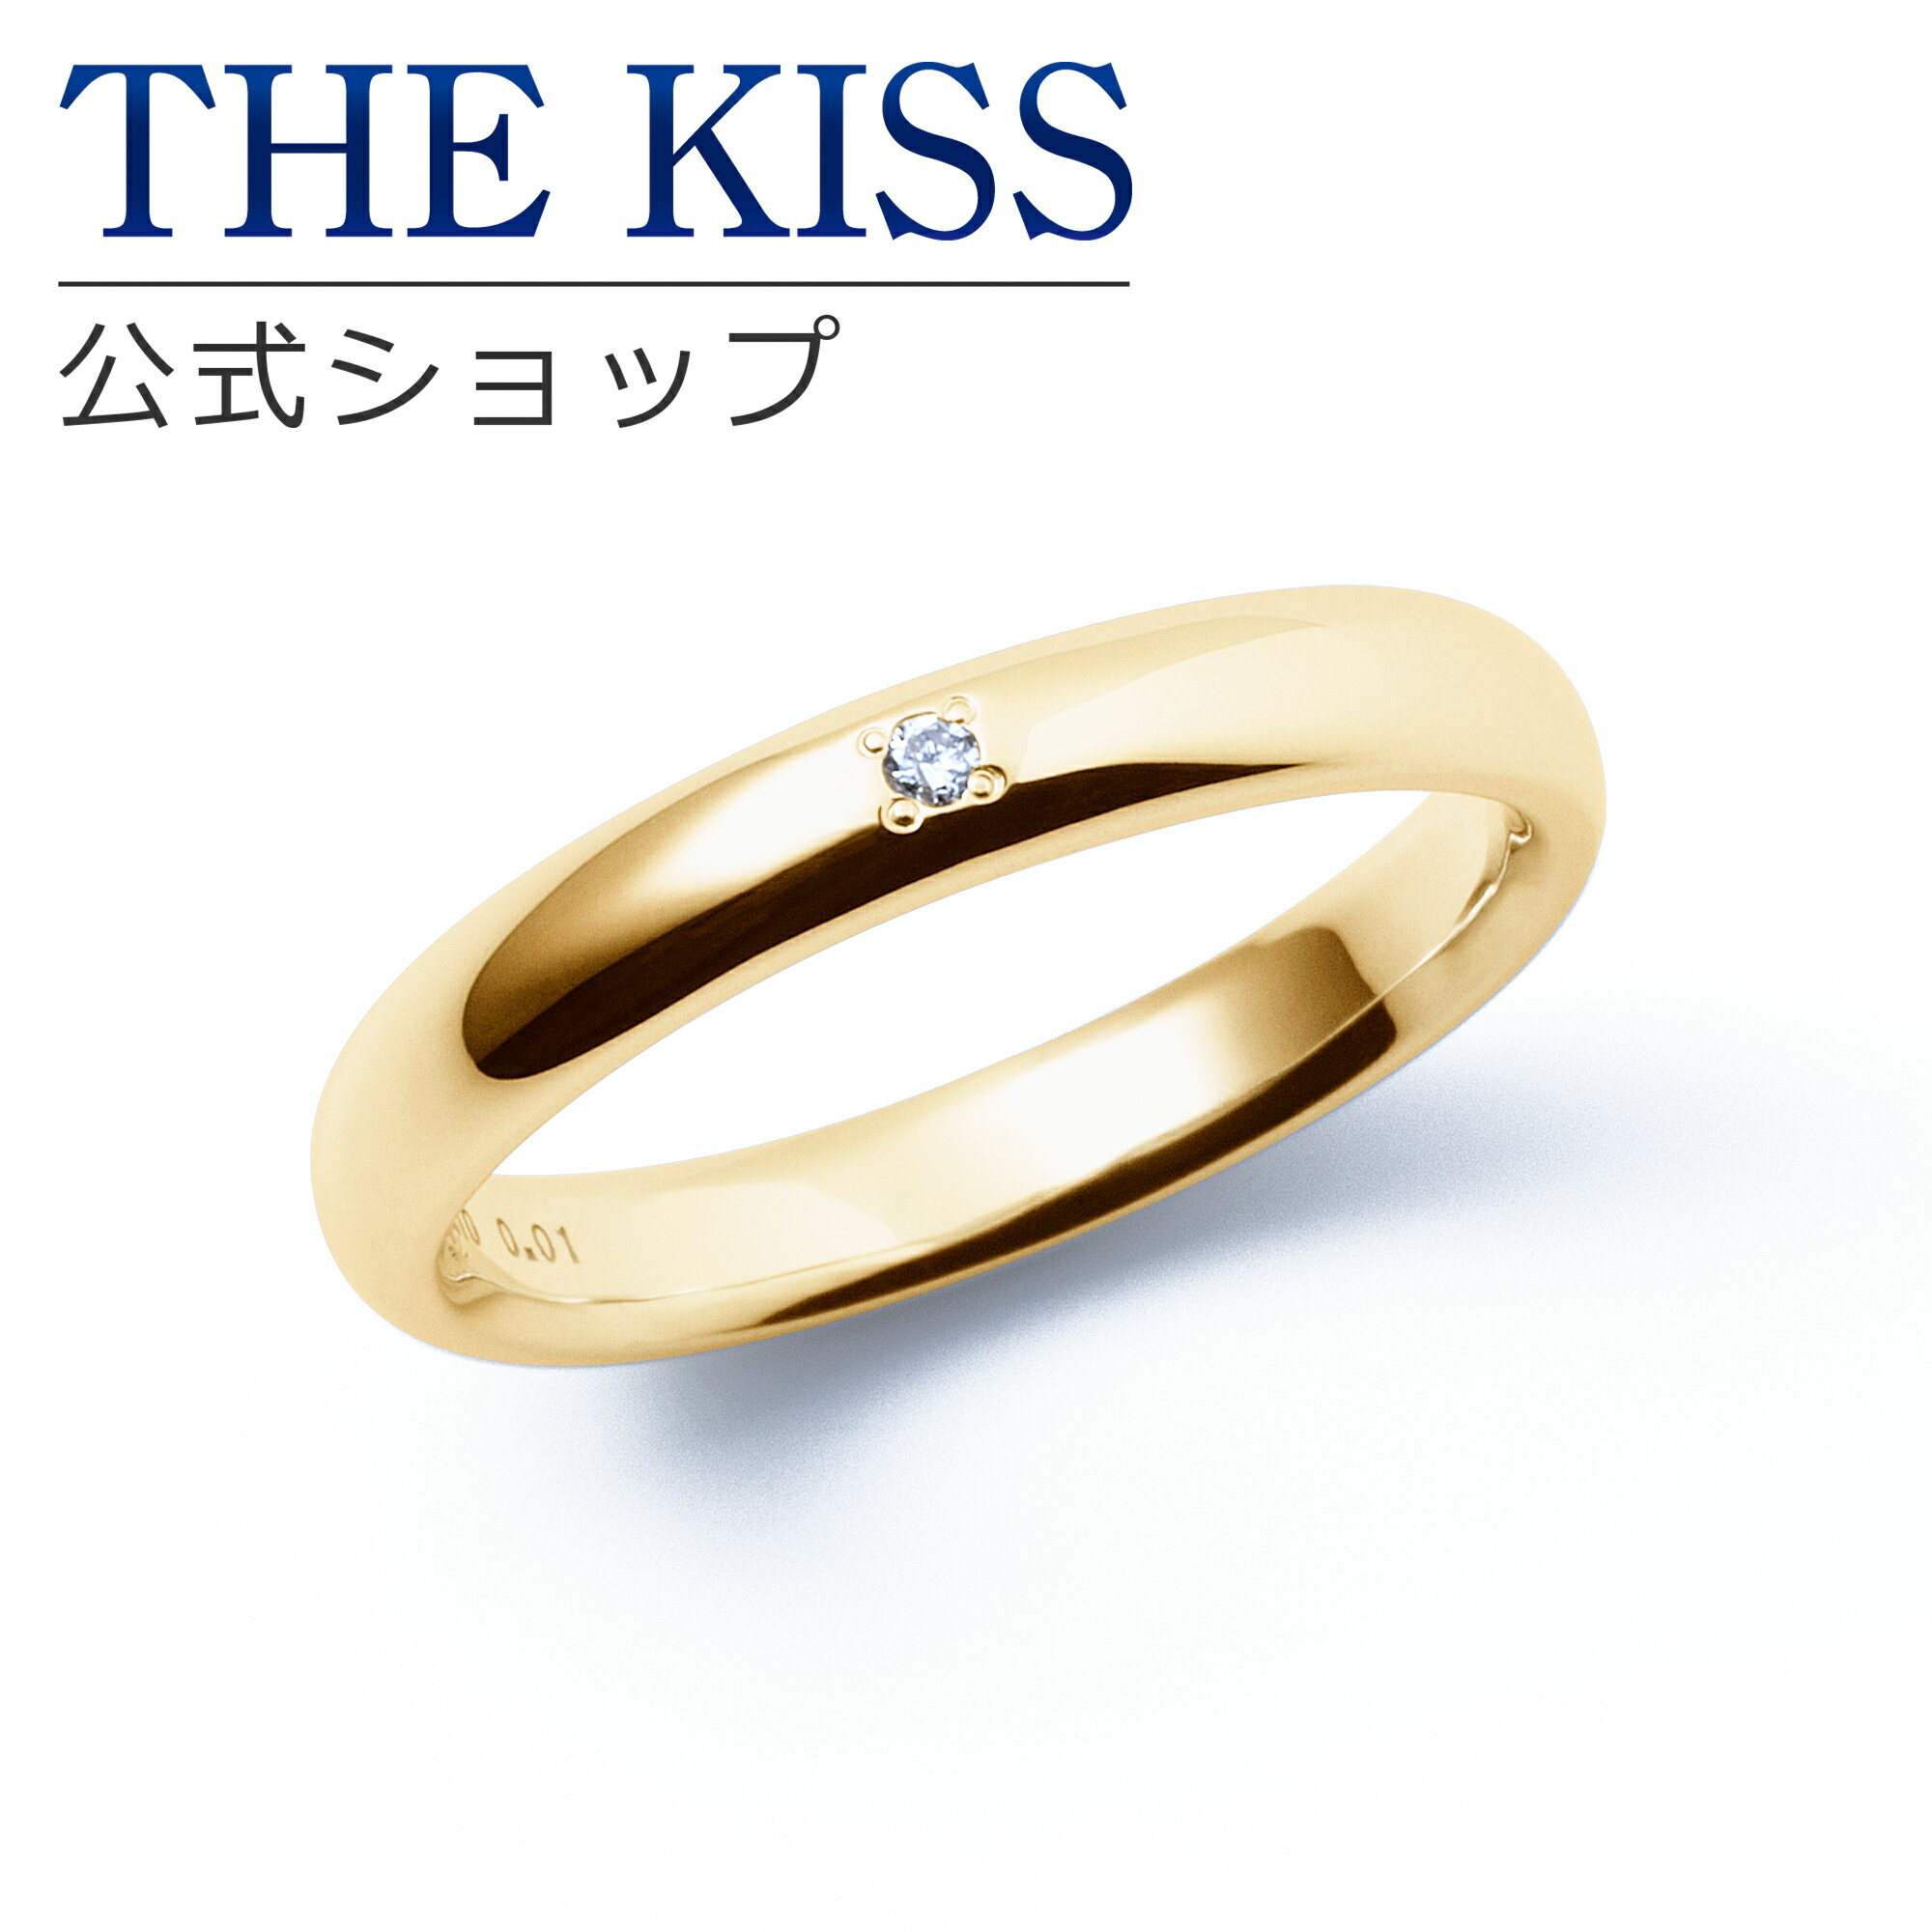 【ラッピング無料】【刻印無料】【THE KISS Anniversary】 THE KISS 公式ショップ K10 イエローゴールド マリッジ リング 結婚指輪 ペアリング （ レディース 単品 ） yg カップル 人気 ジュエリーブランド THEKISS ザキッス 指輪 7581122041 シンプル 女性 ブライダル